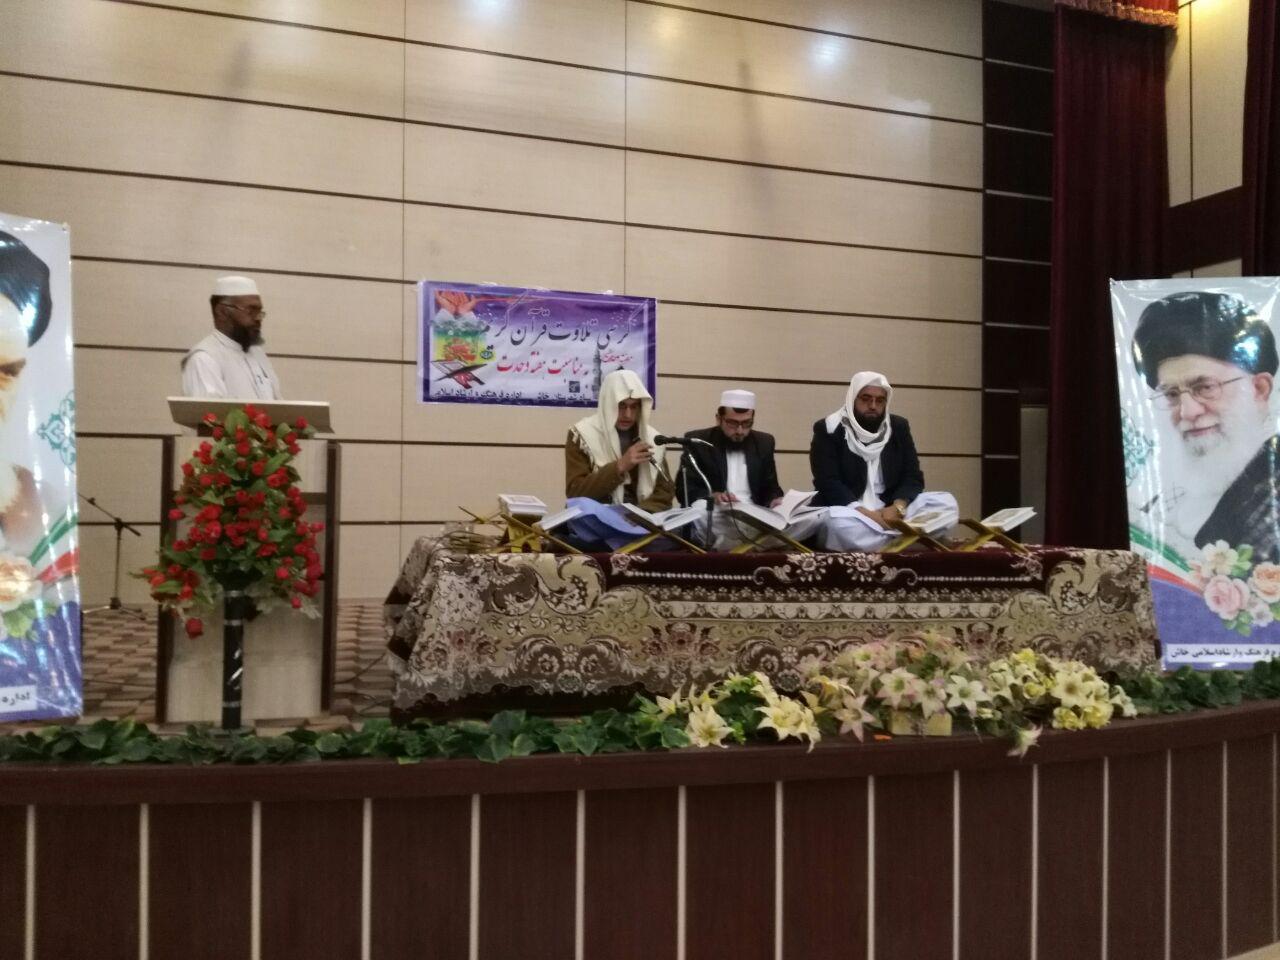 برگزاری کرسی بزرگ تلاوت قرآن در شهرستان خاش از نگاه لنز دوربین